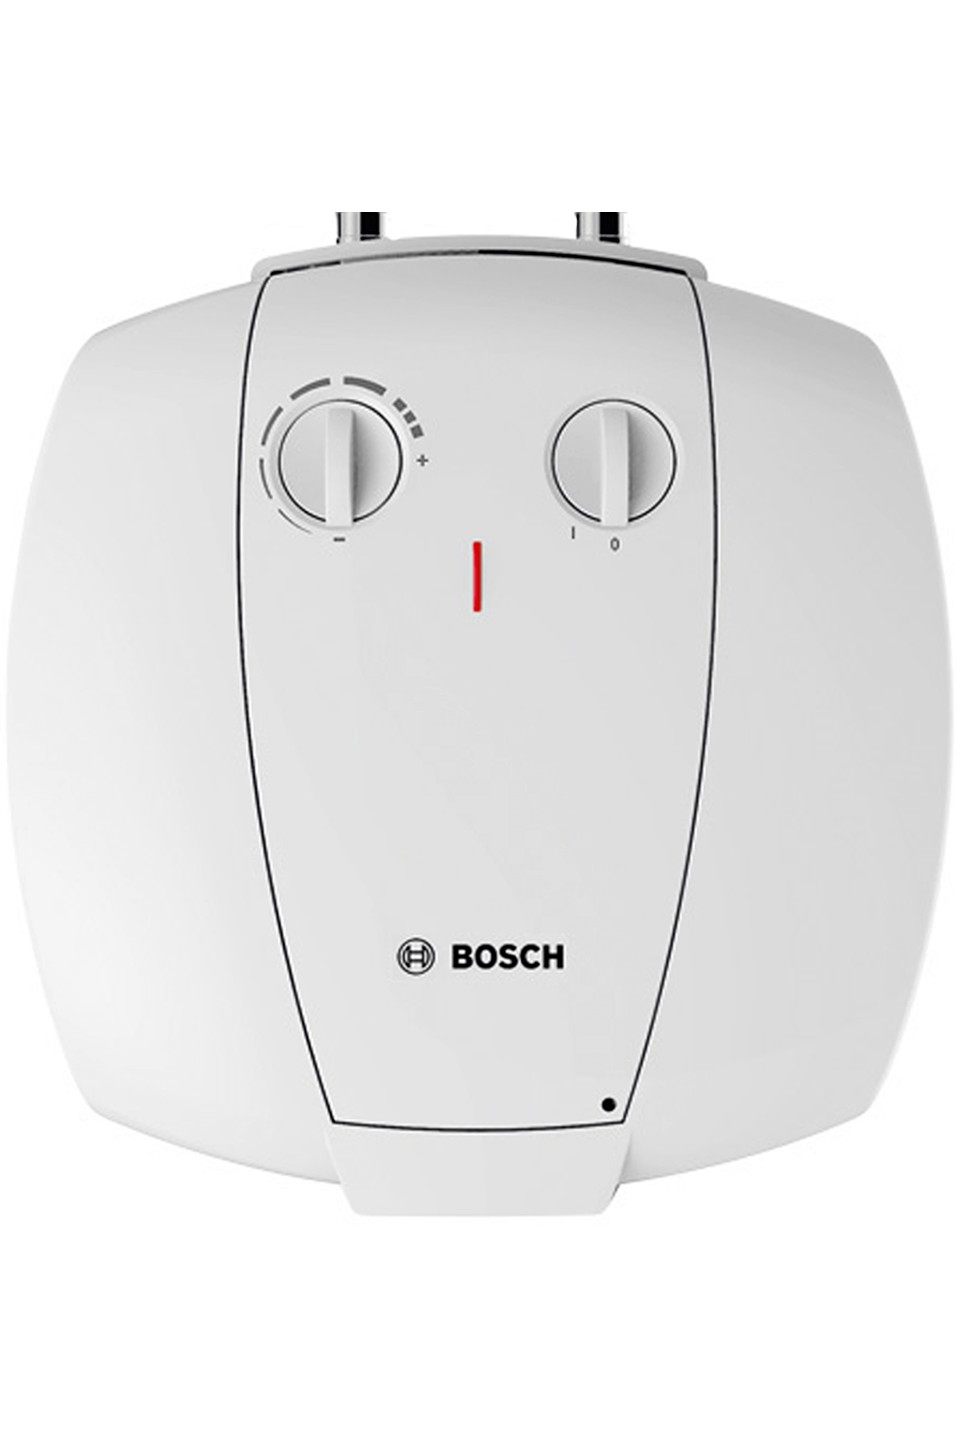 Ціна водонагрівач на  15 літрів Bosch TR 2000 T 15 T (7736504744) в Києві